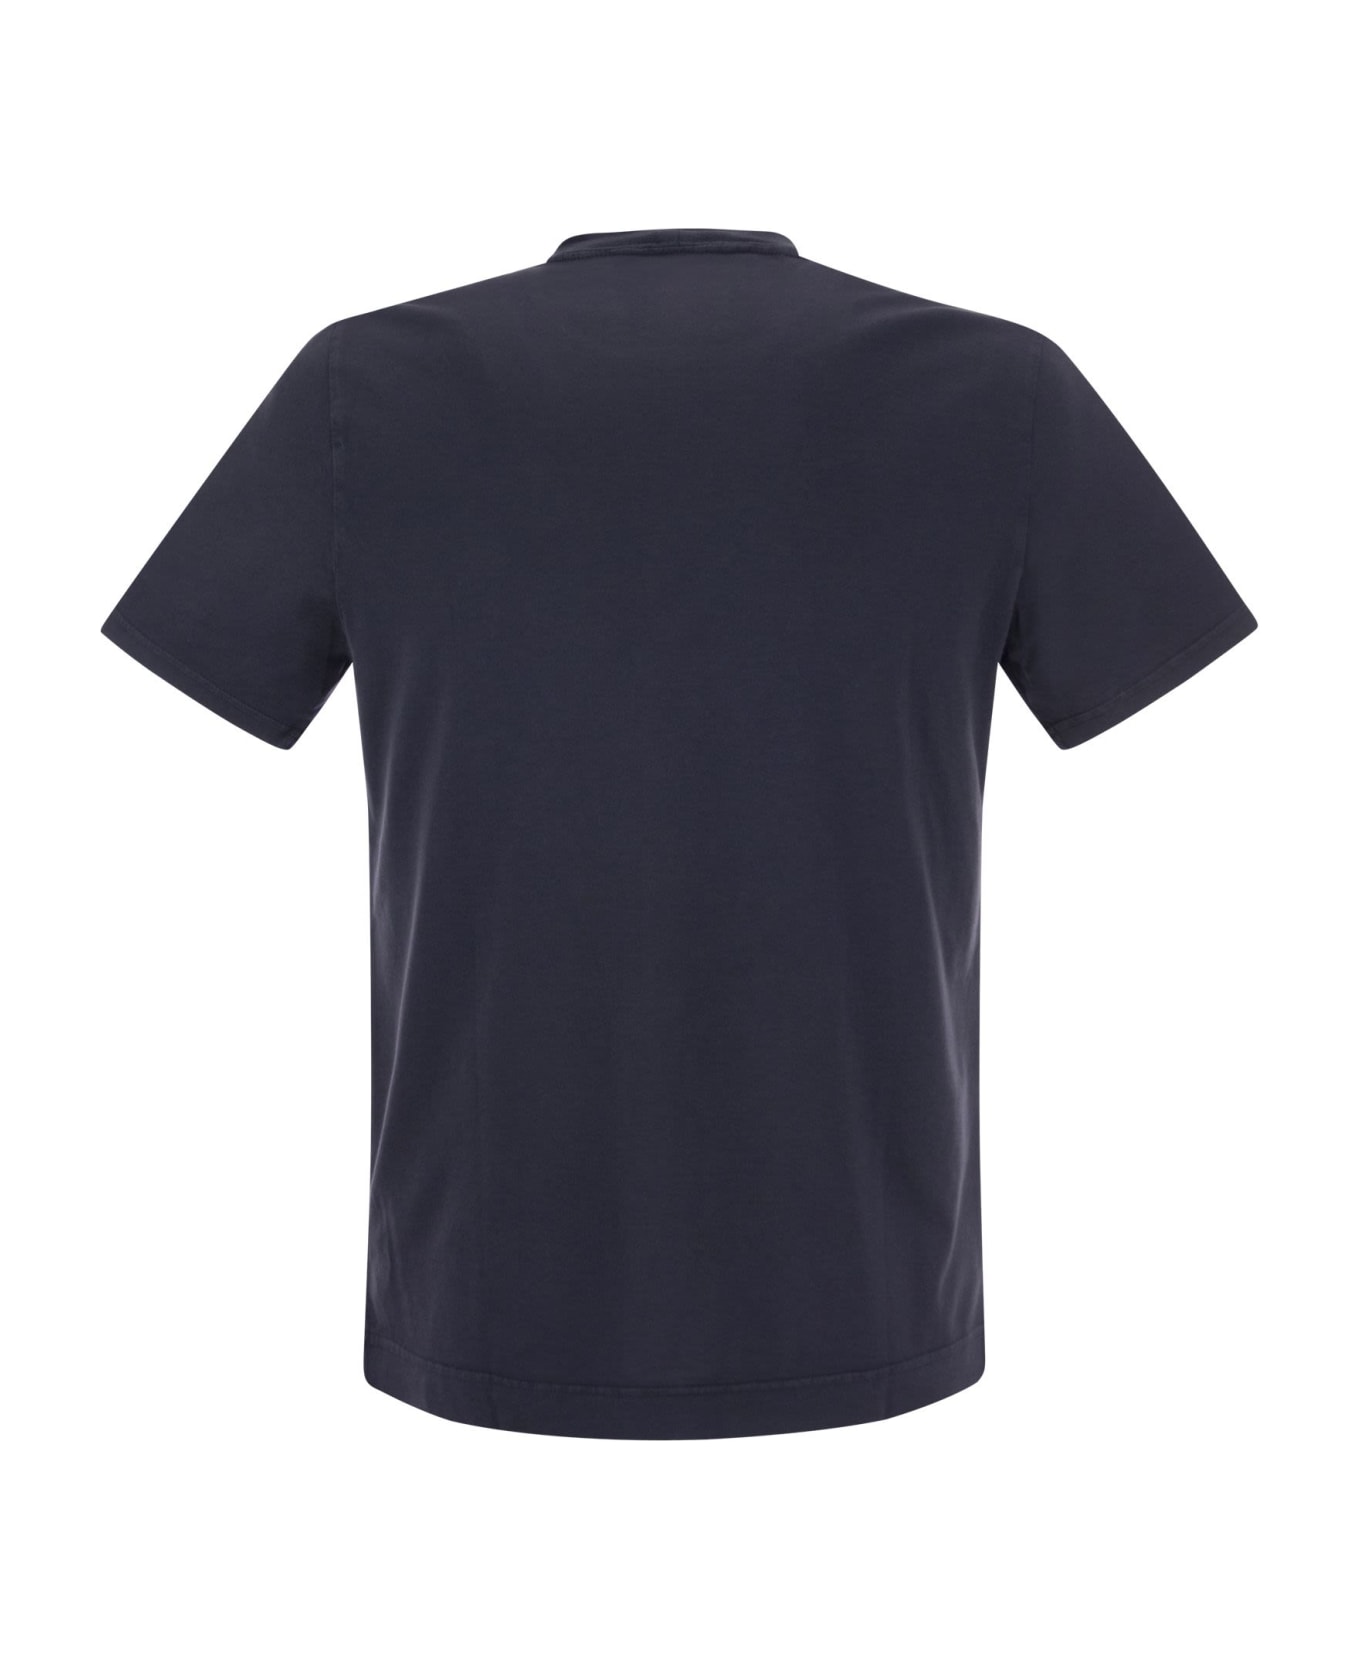 Fedeli Crew-neck Cotton T-shirt - Blue